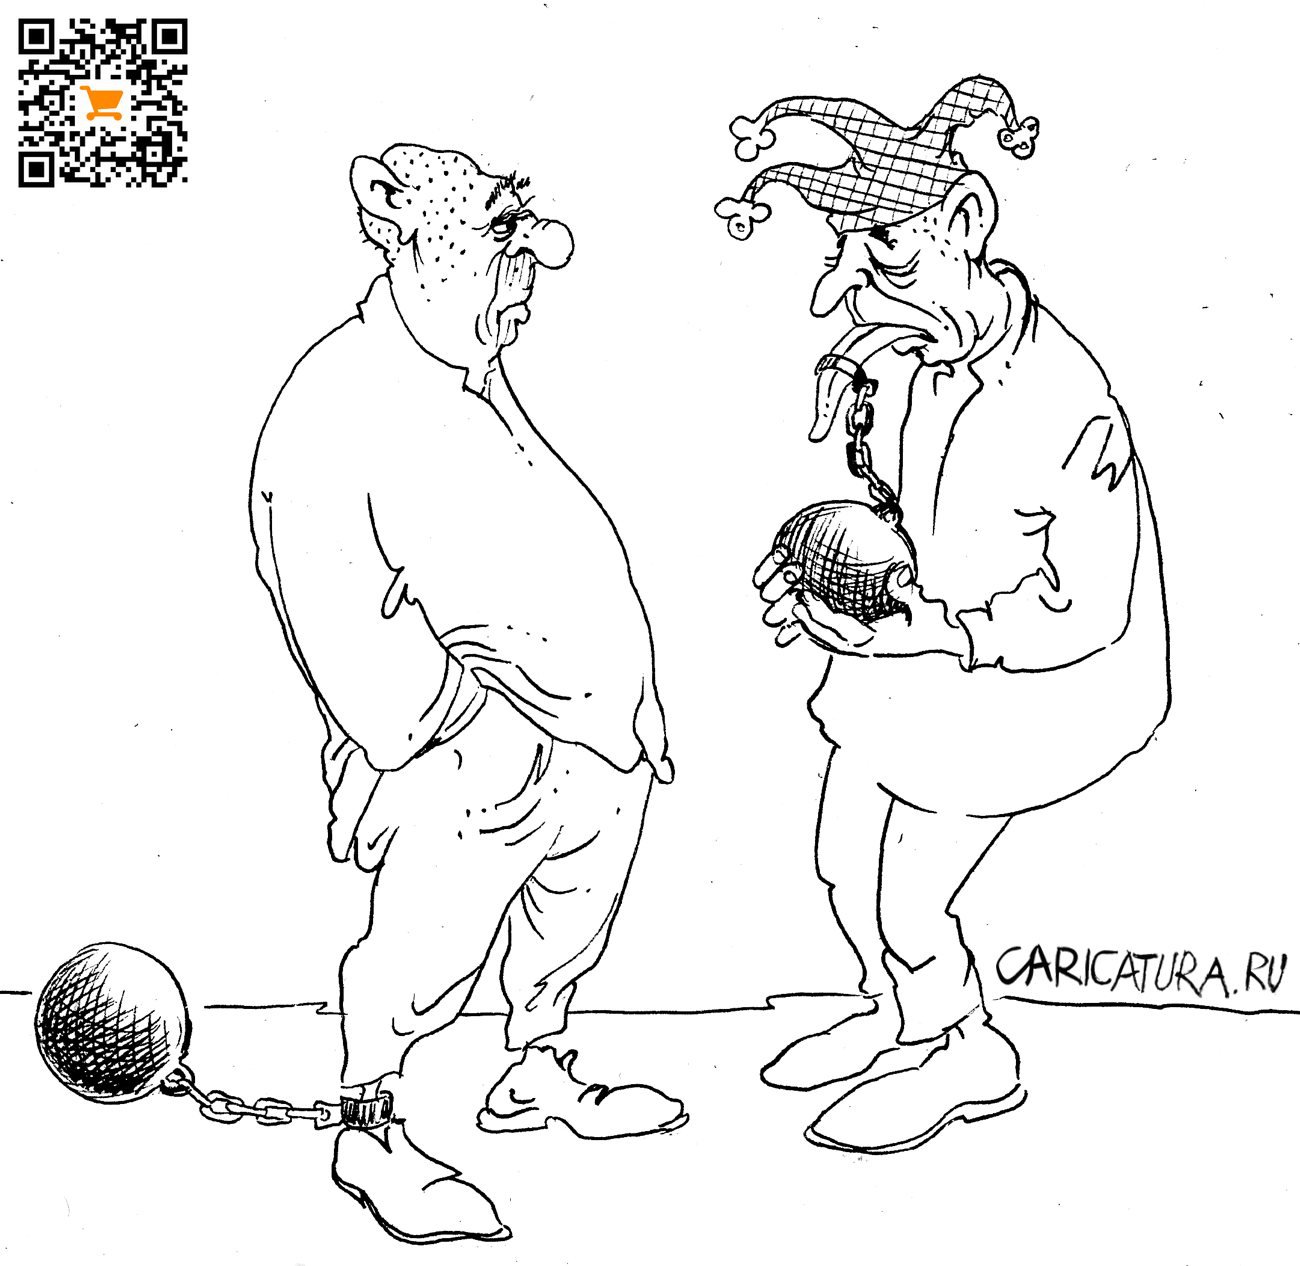 Карикатура "Кандалы", Александр Шульпинов